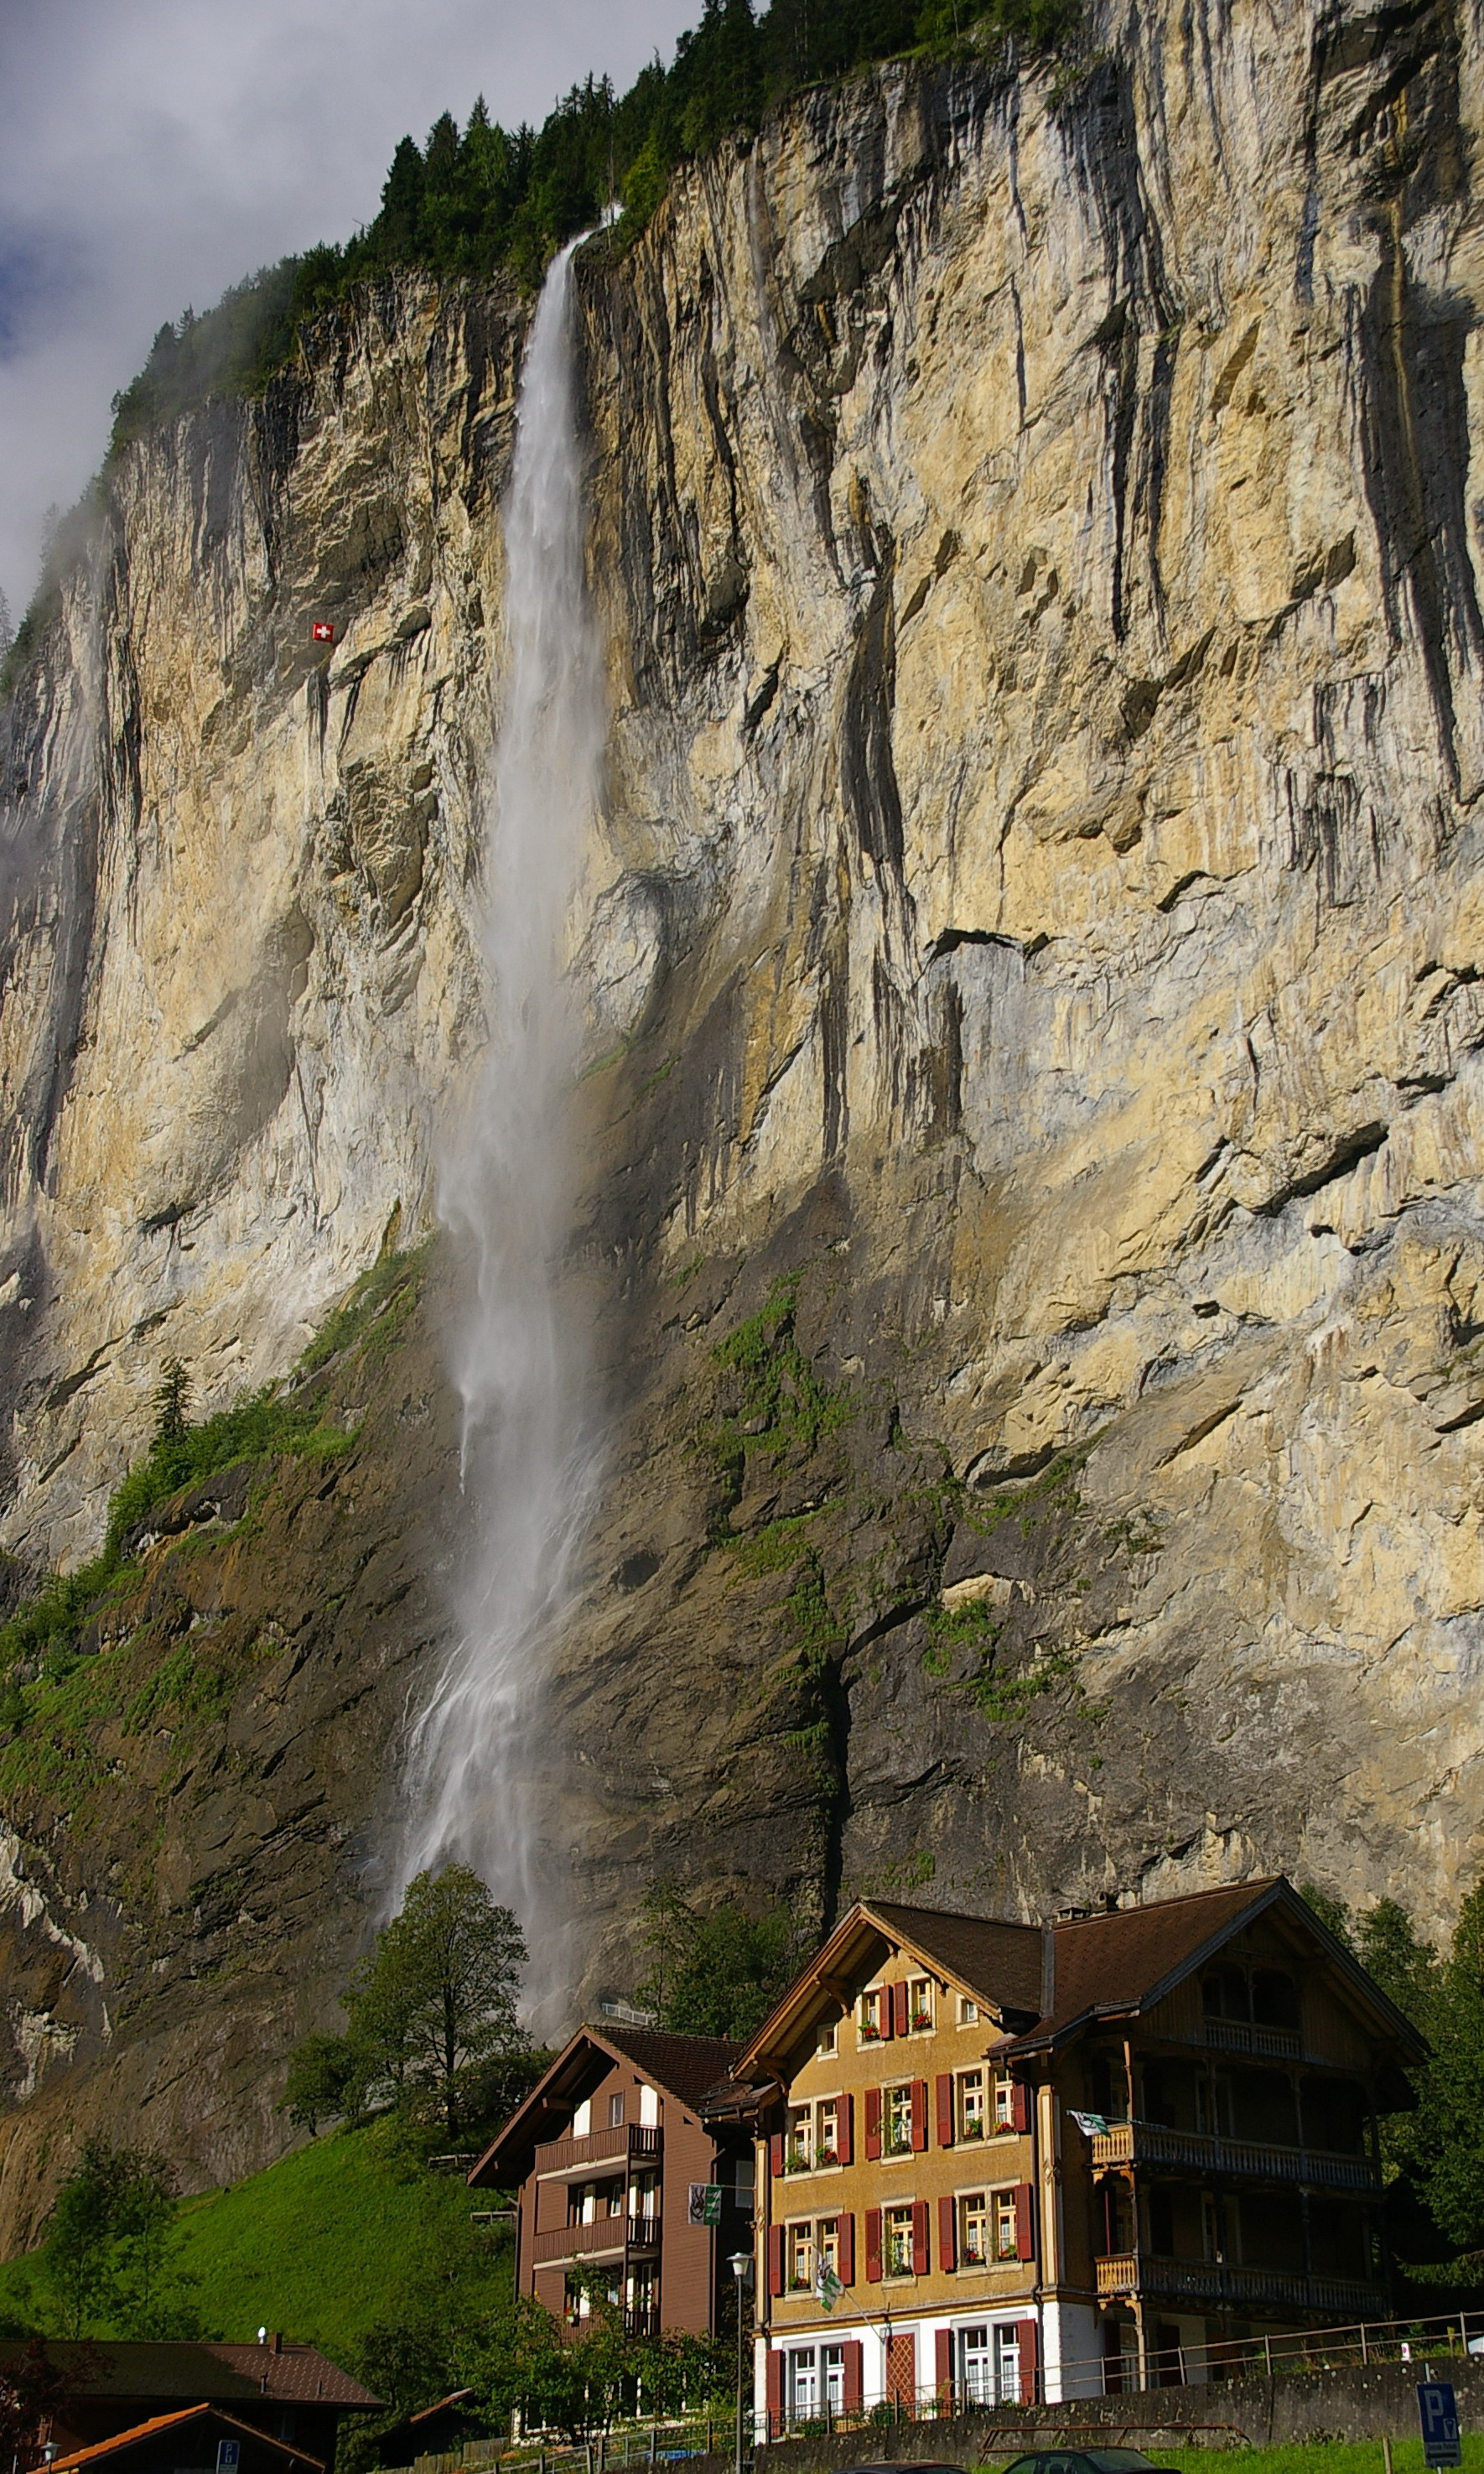 15 Beautiful Photos of Amazing Waterfalls - BeautyHarmonyLife